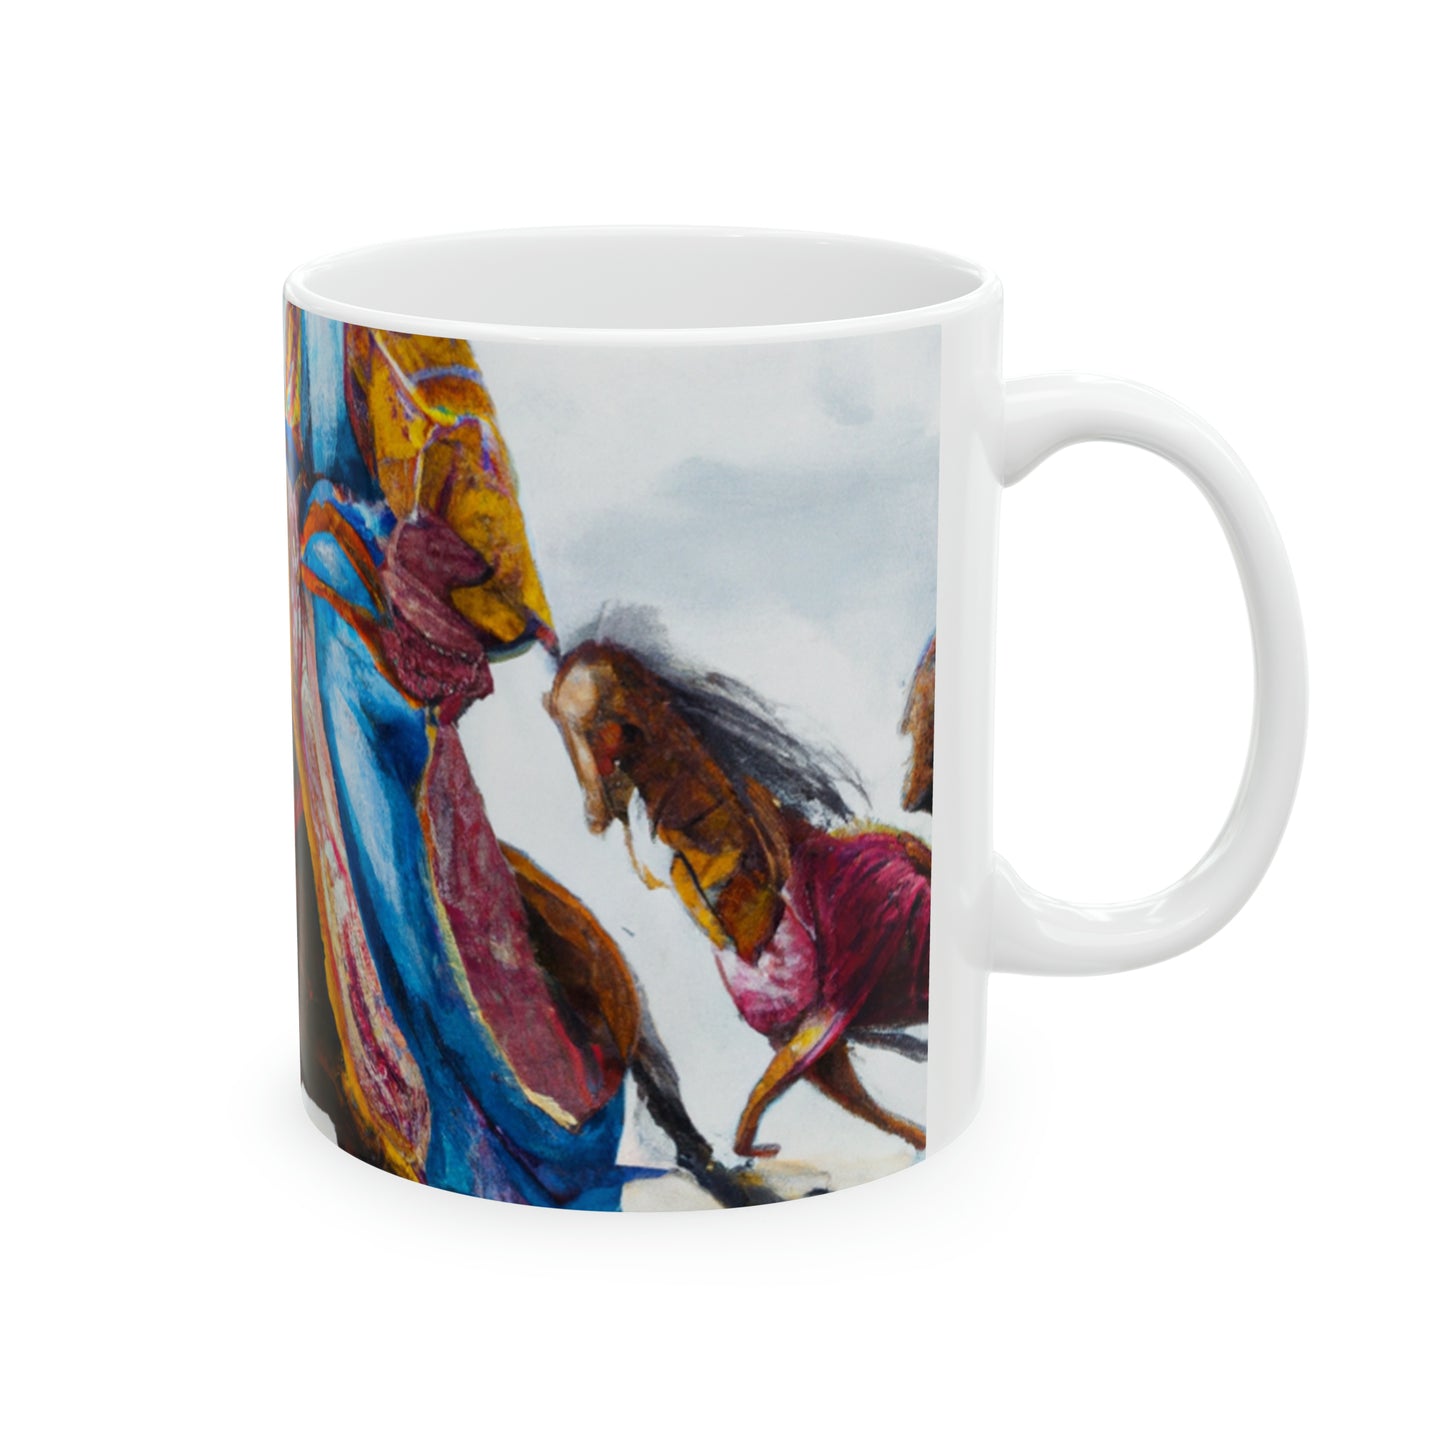 Ceramic Mug 11oz - Somali Horseman